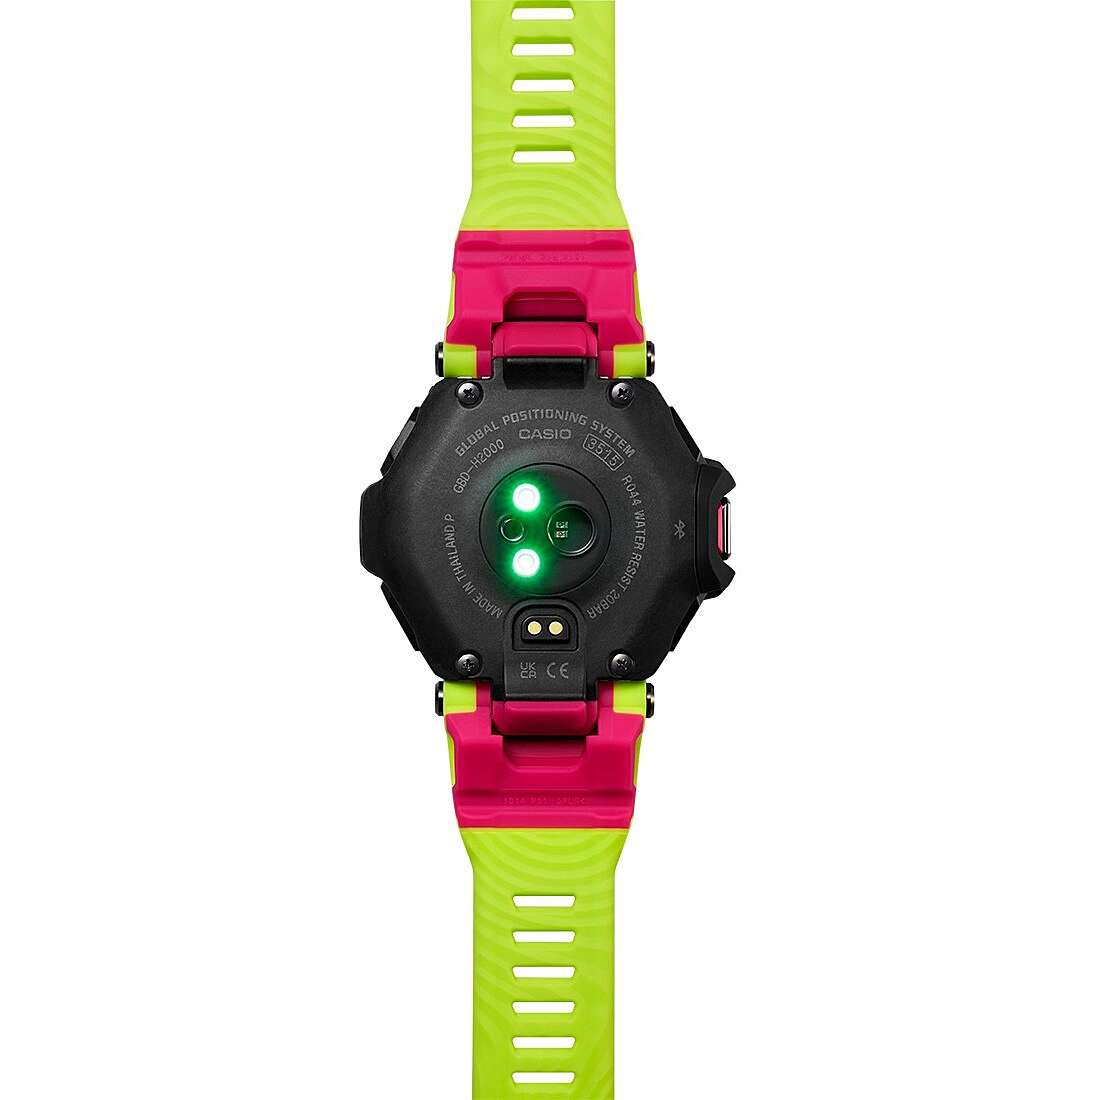 Uhr Smartwatch mann G-Shock GBD-H2000-1A9ER